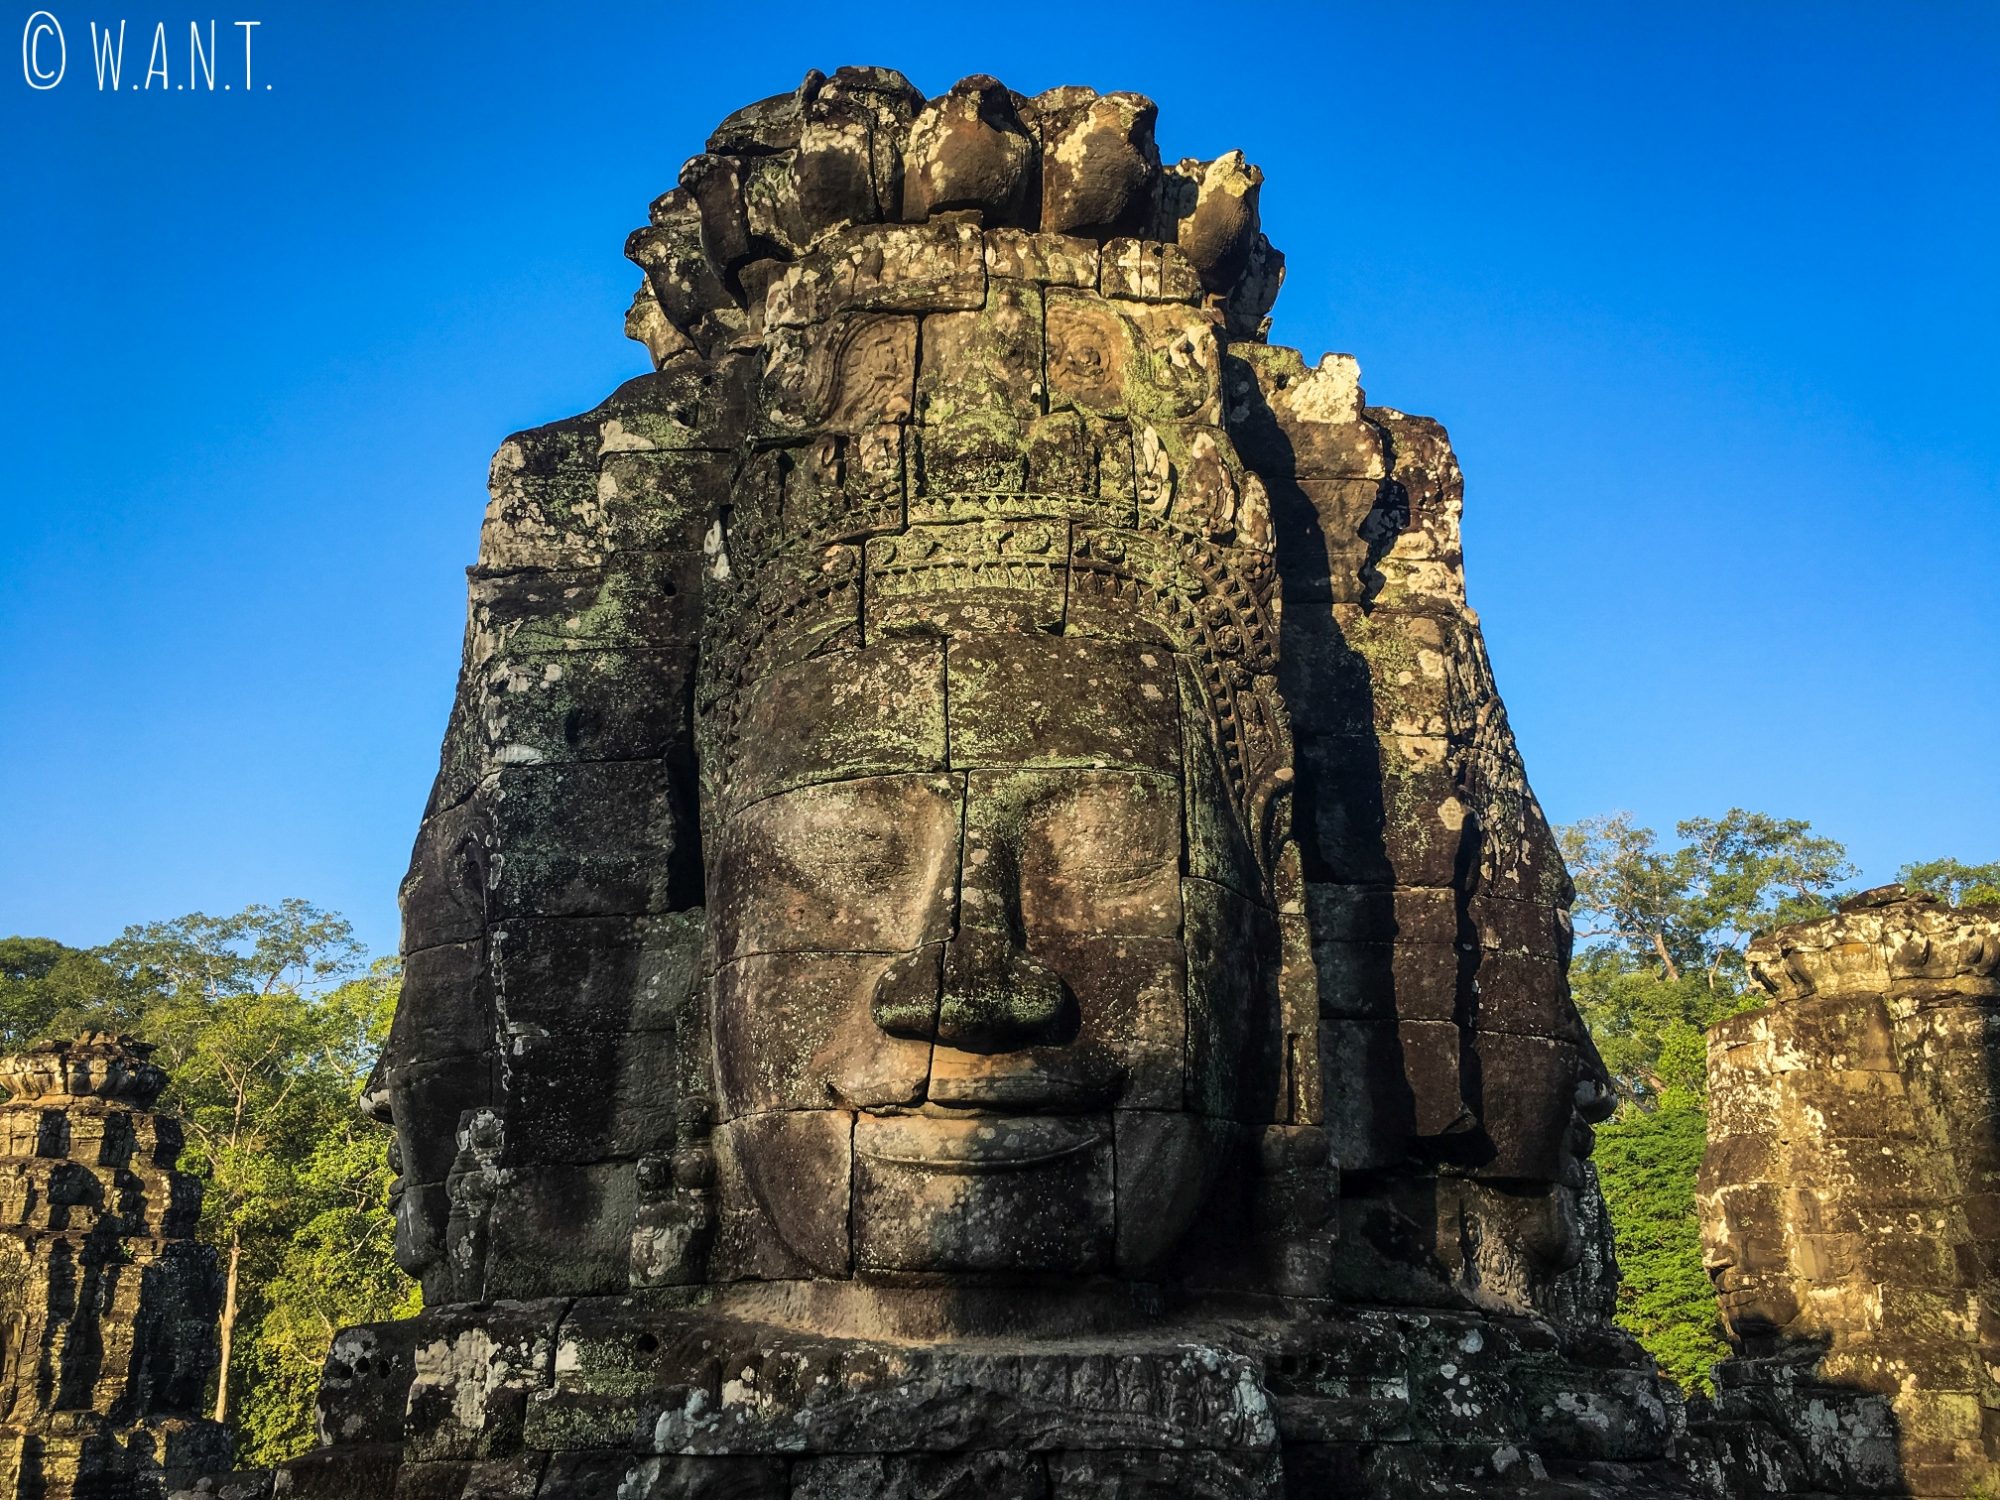 Rayon du soleil sur les visages du temple Bayon à Angkor